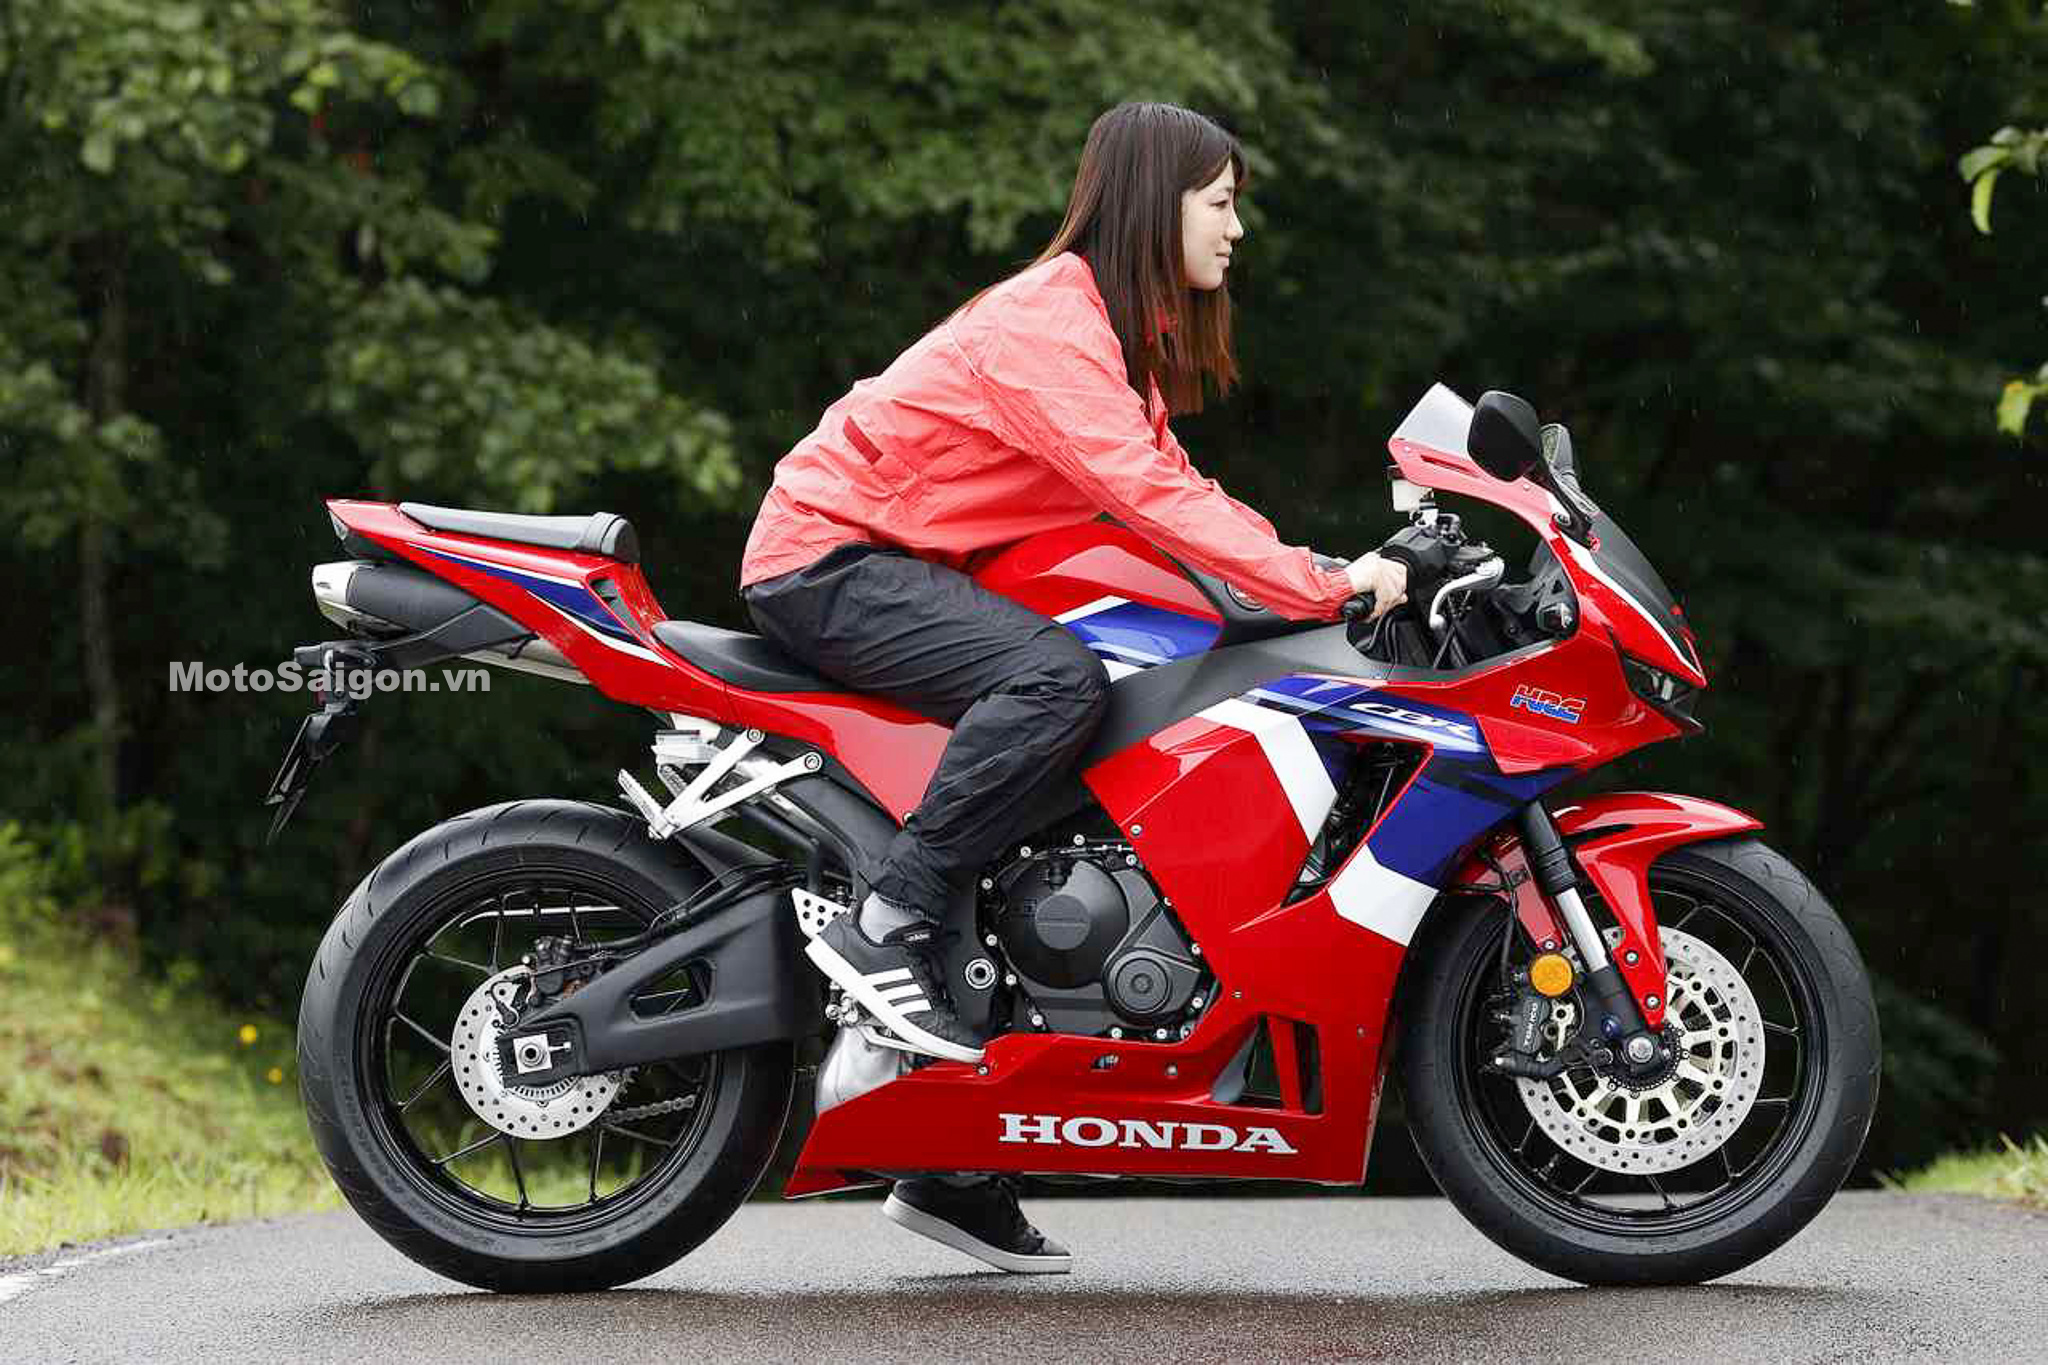 Lộ hình ảnh Honda CBR600RR 2021 trước ngày công bố giá bán  Motosaigon